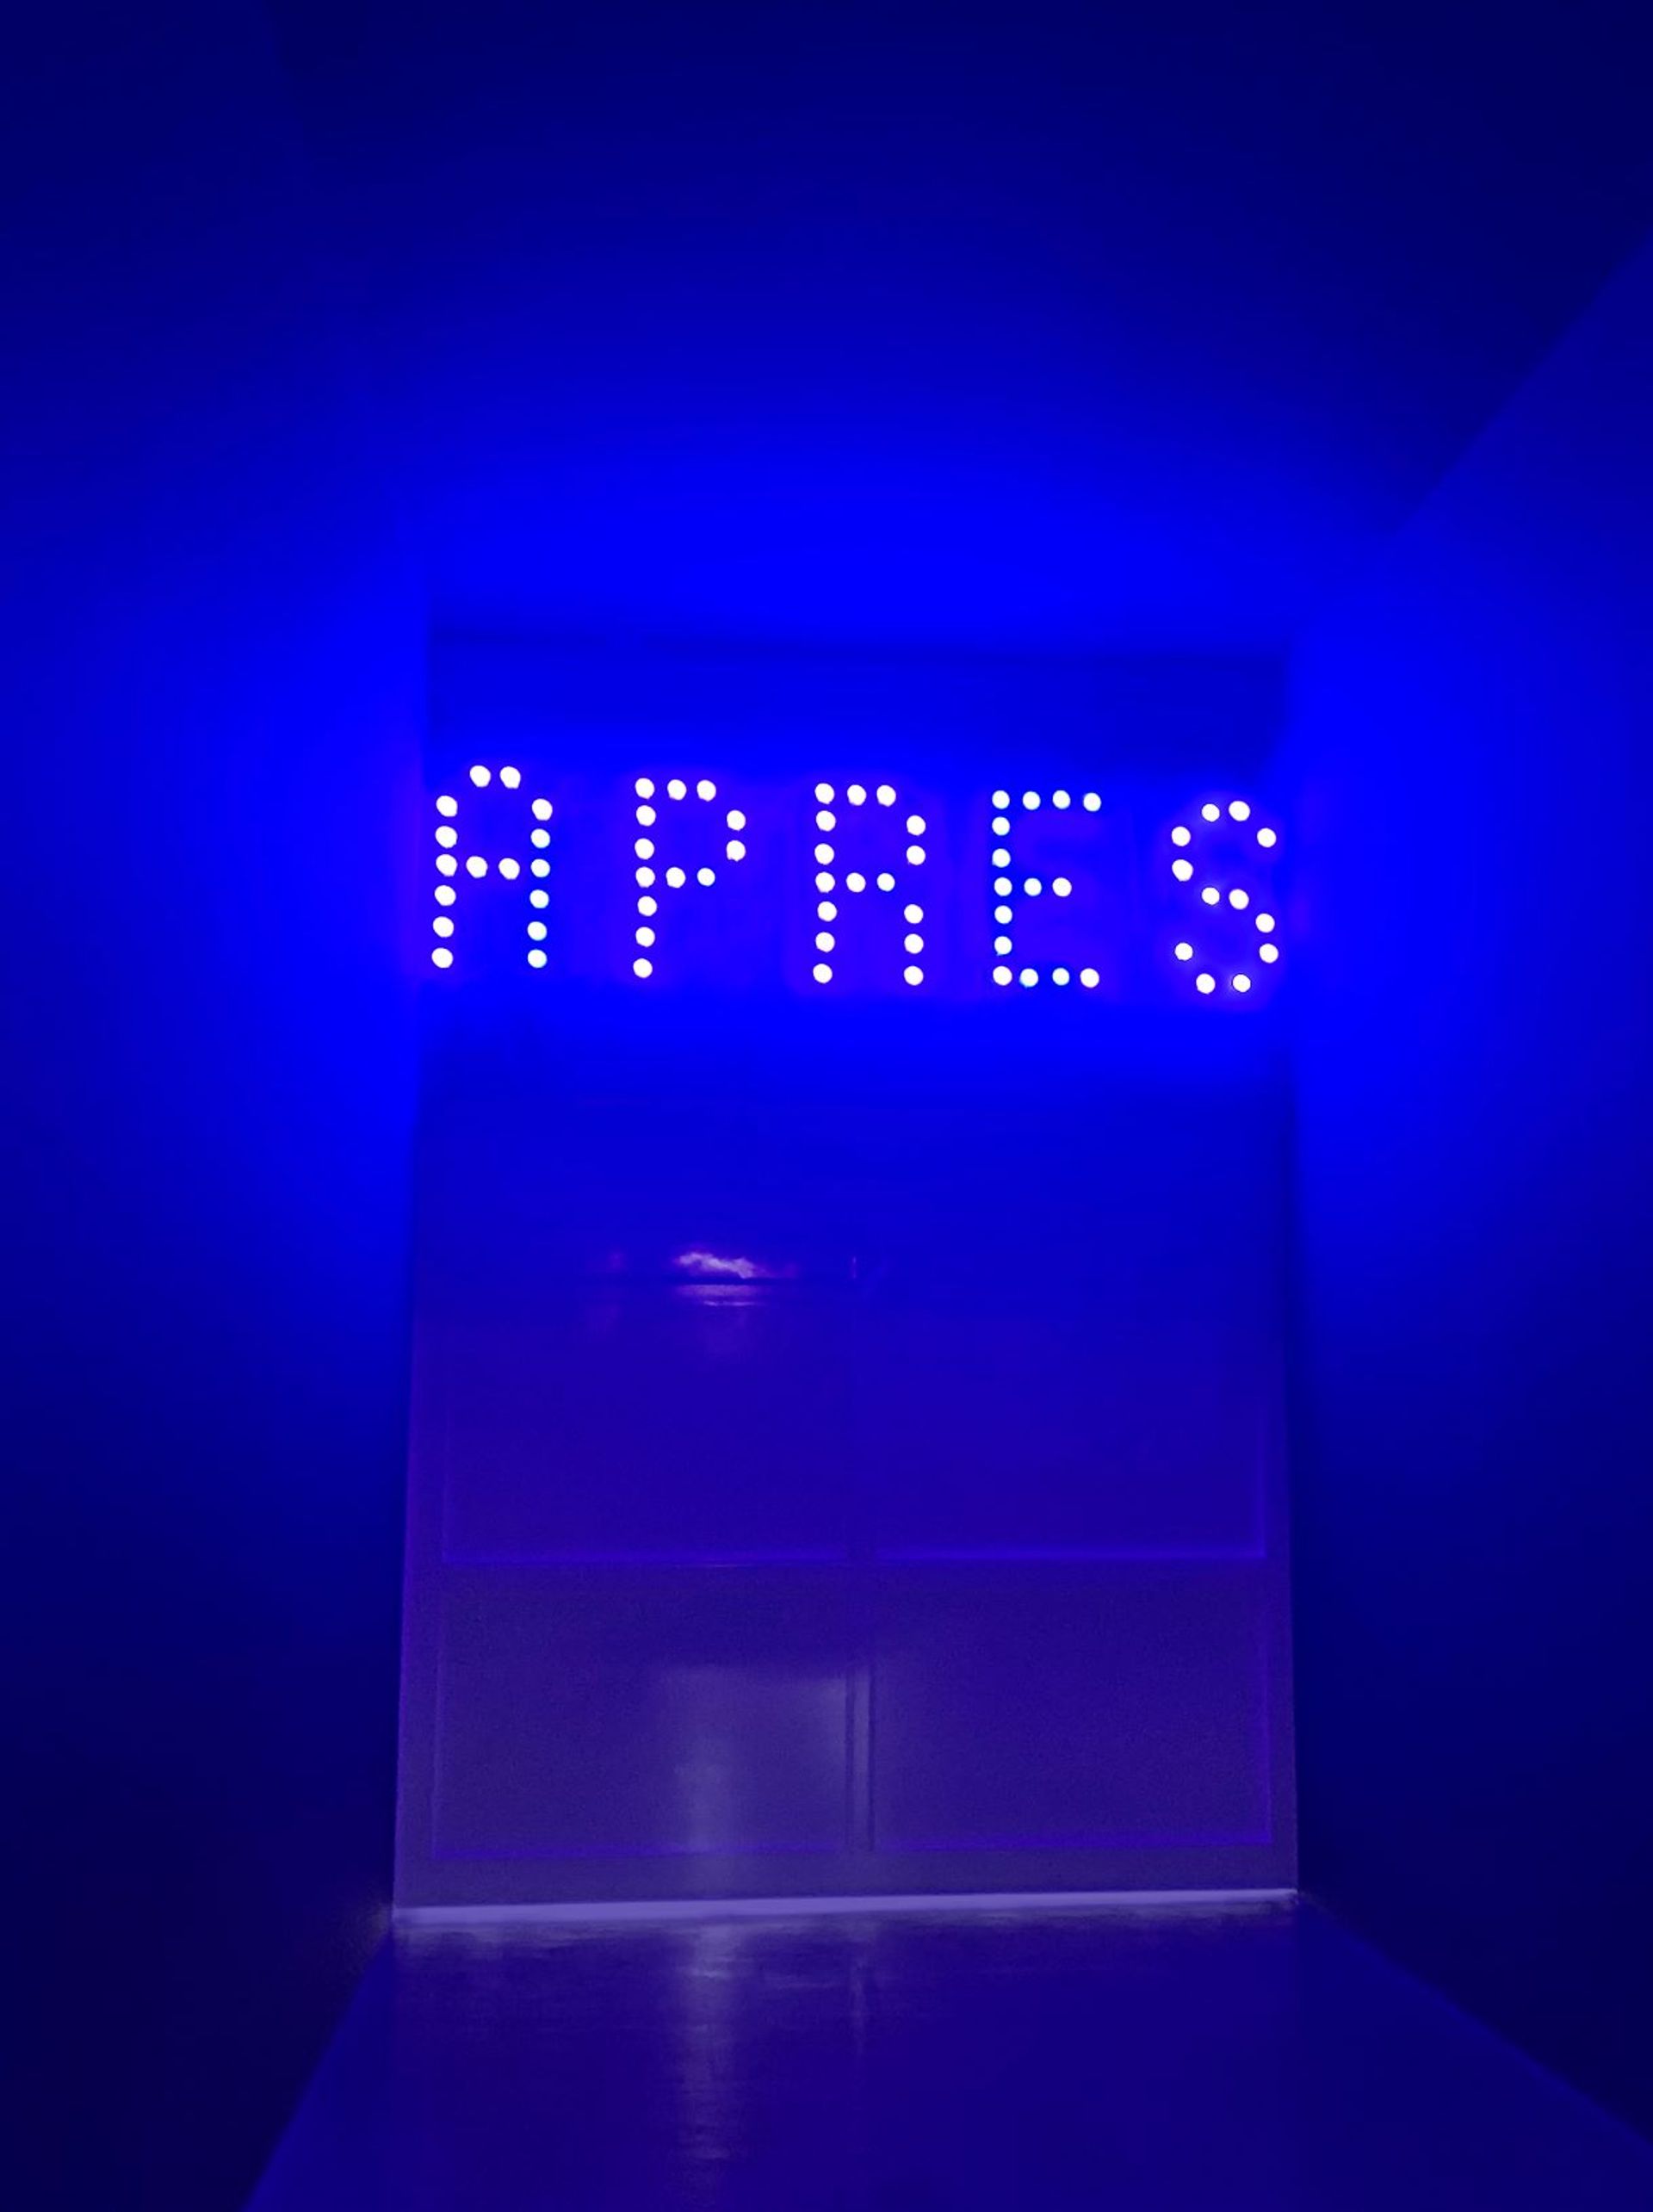 Christian Boltanski, Après, 2010, 72 douilles en laiton, 72 ampoules LED bleues, câble électrique, prise de courant. Courtesy de l’artiste et Marian Goodman Gallery, Paris/Londres/New York.